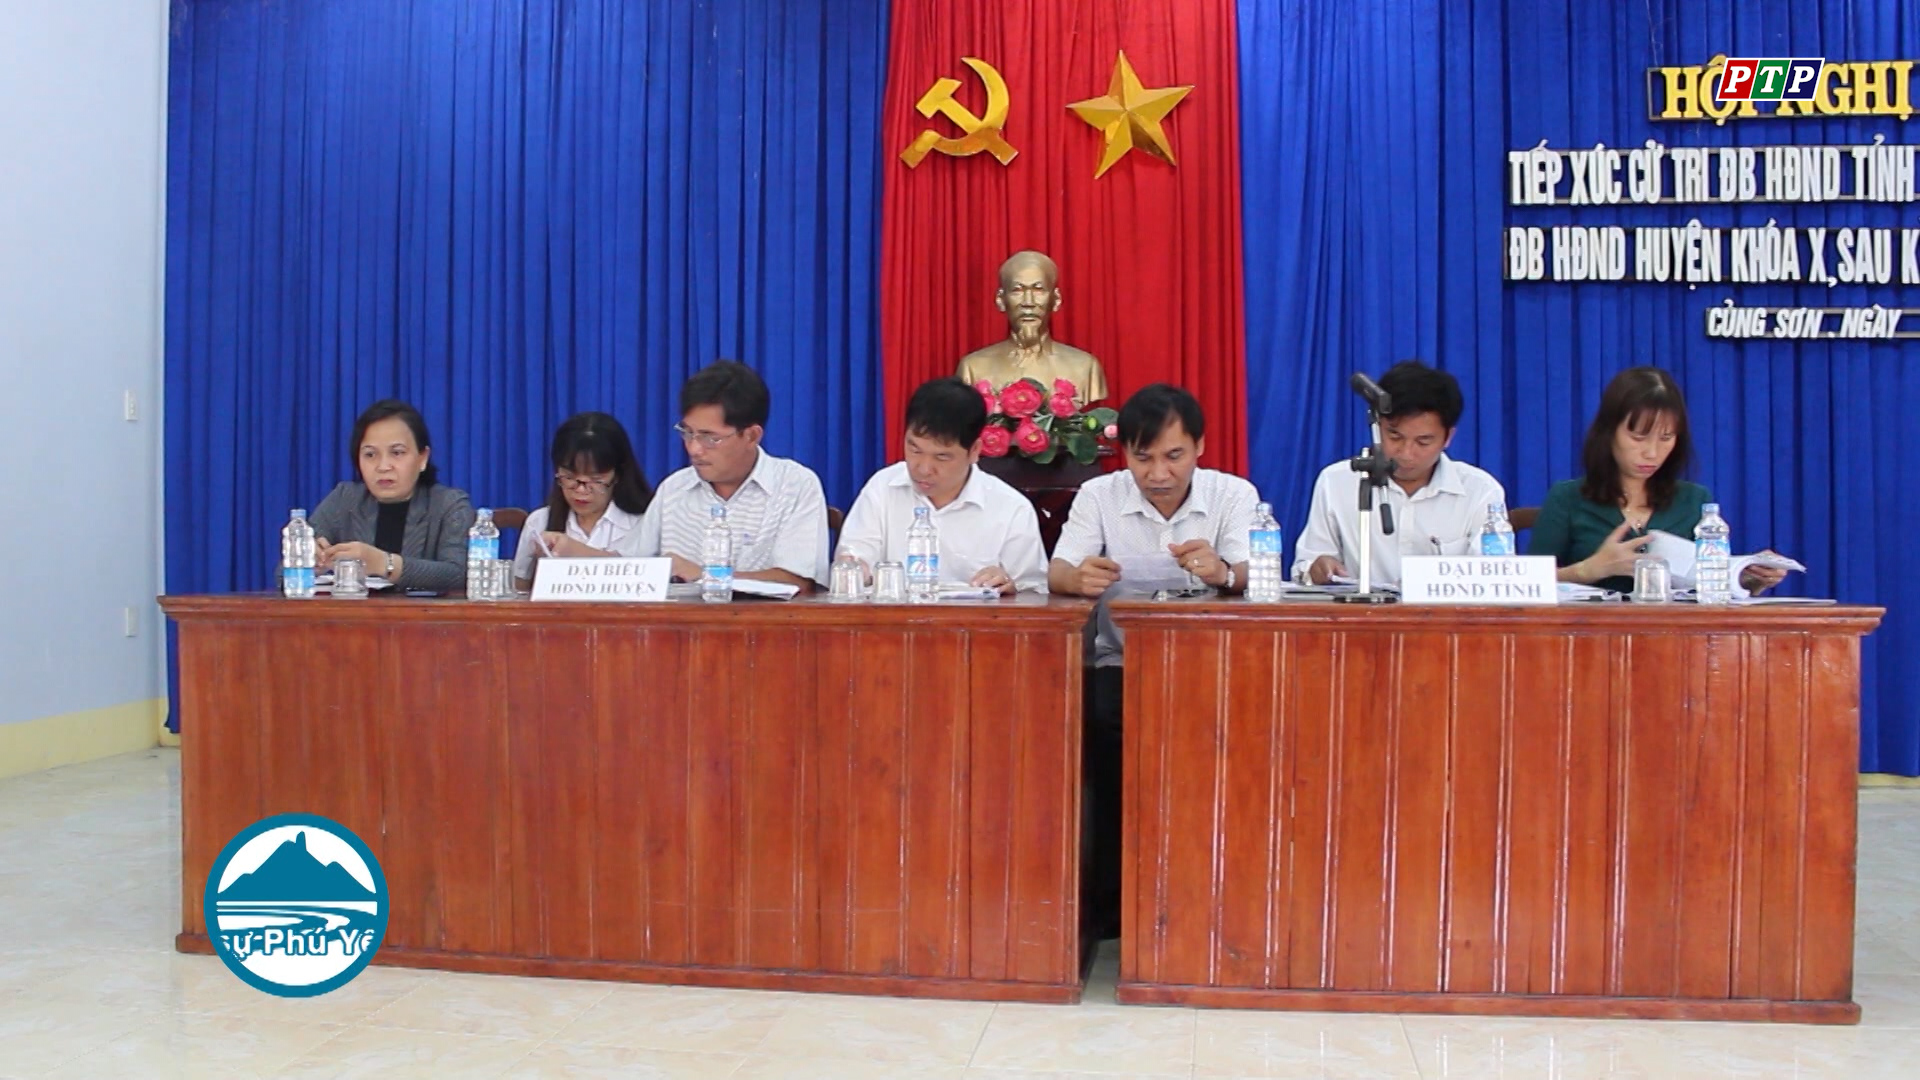 Đại biểu HĐND tỉnh khóa VII tiếp xúc cử tri huyện Sơn Hòa sau Kỳ họp thứ 7